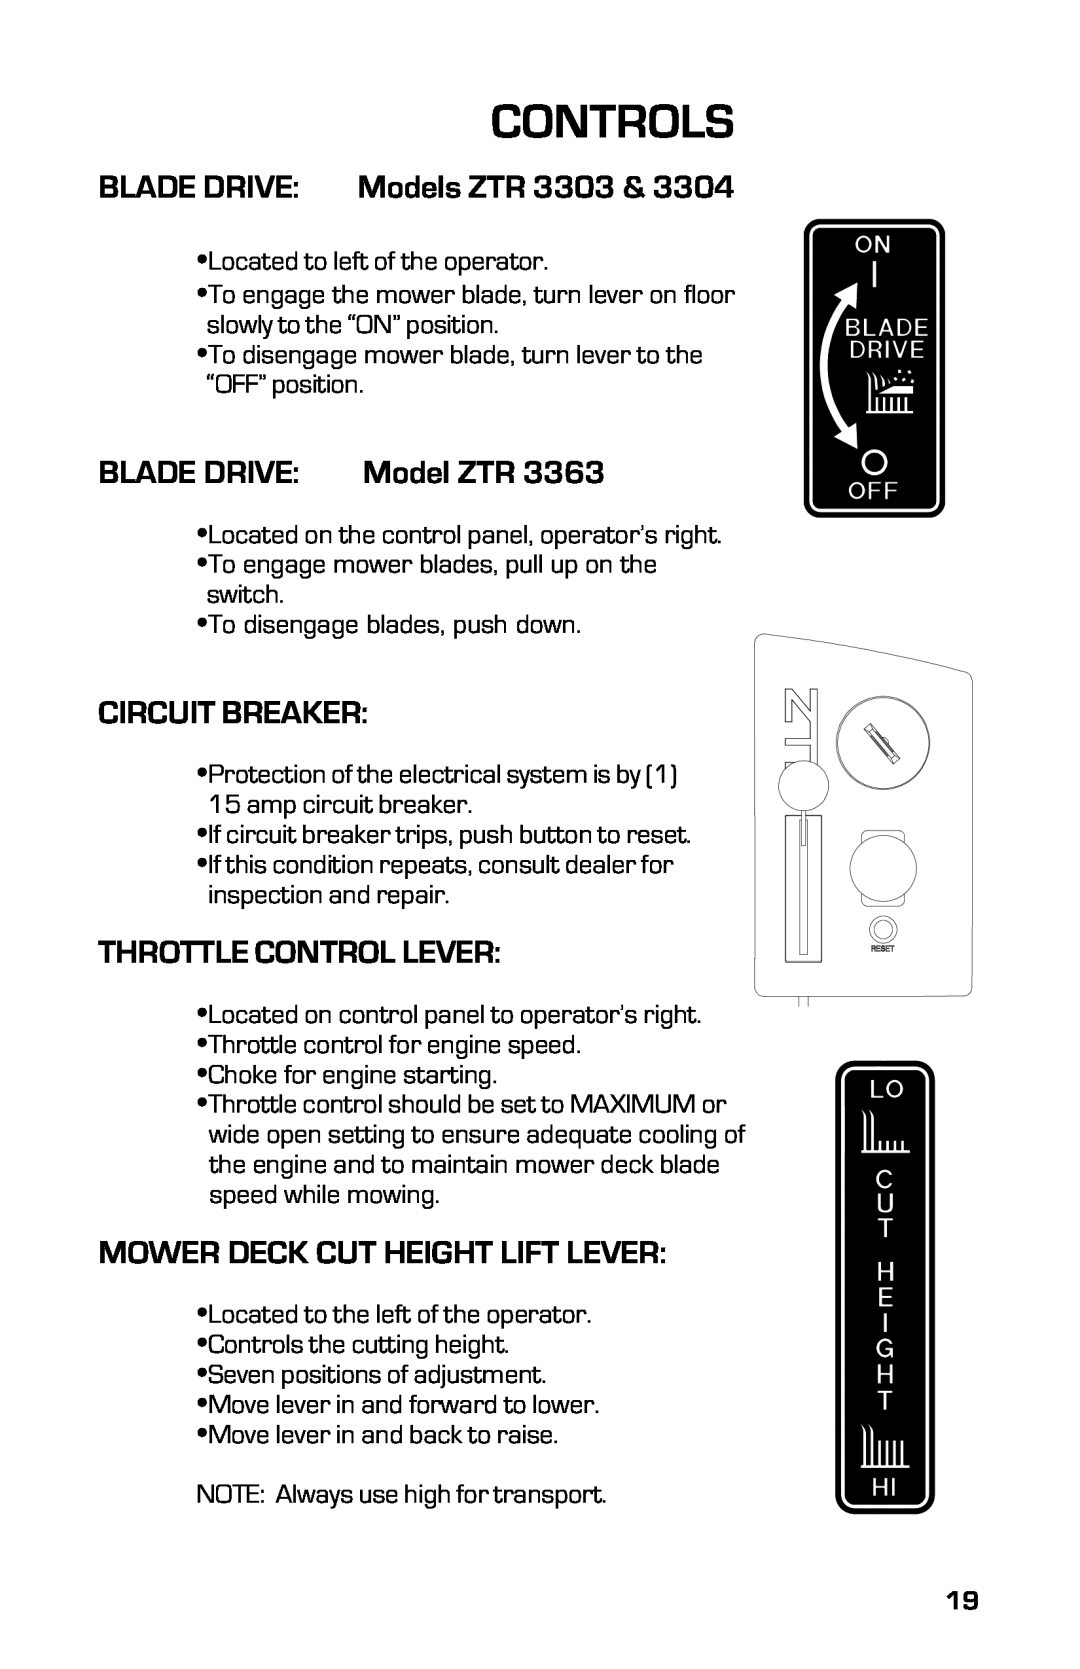 Dixon 13631-0702 manual Controls, BLADE DRIVE Models ZTR, Blade Drive, Model ZTR, Circuit Breaker, Throttle Control Lever 